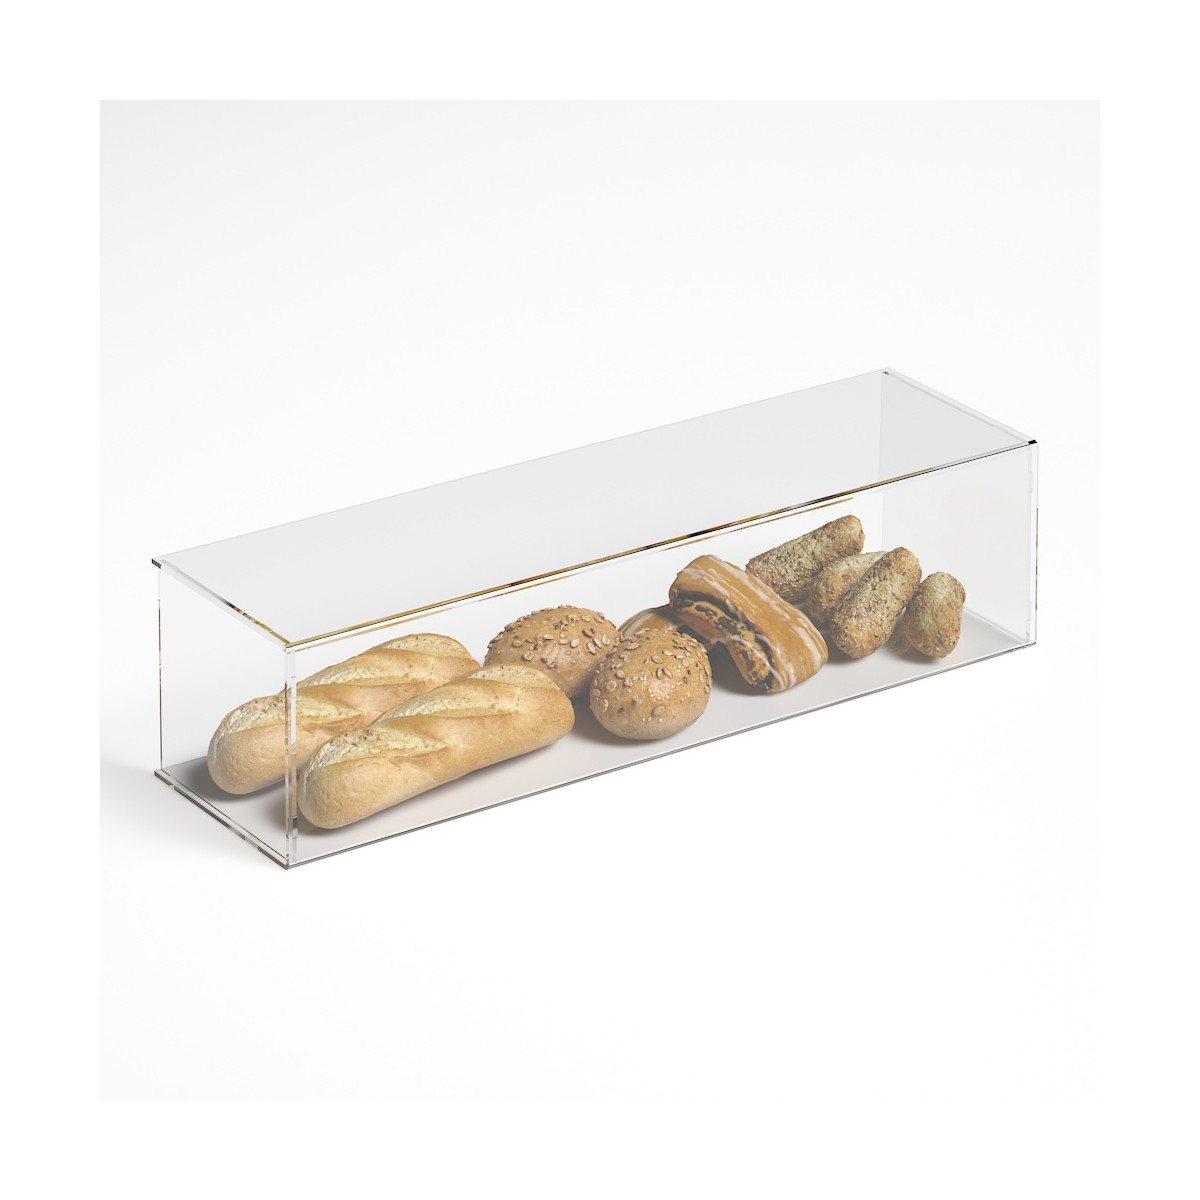 E-1190 PAR-C - Parafiato parasputi in plexiglass trasparente per alimenti con pannelli laterali - Misure: 90x25x H22 cm